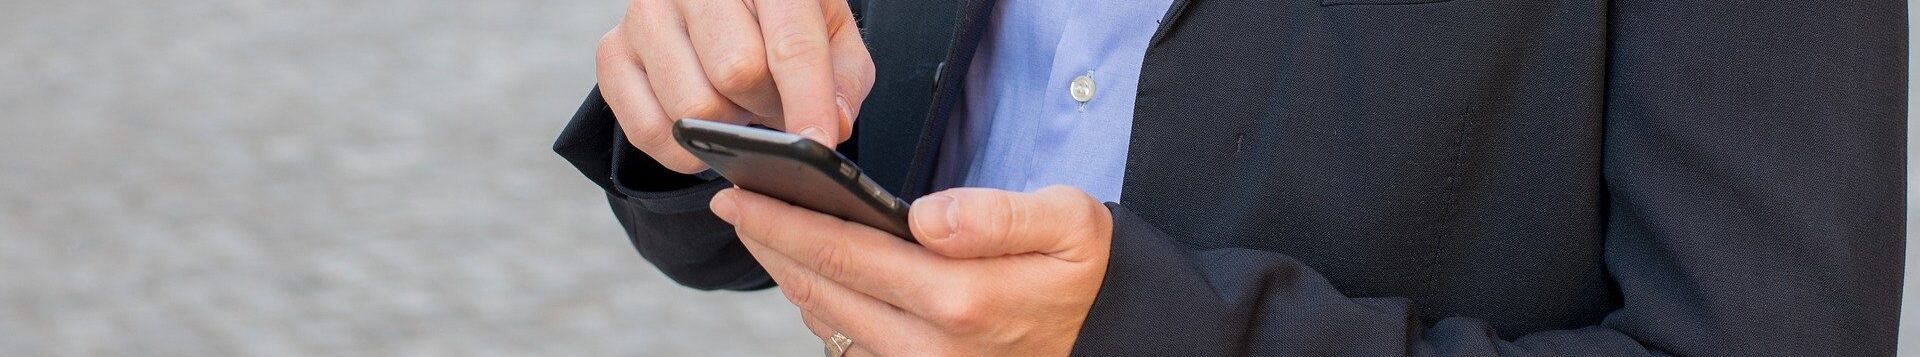 Ein schick gekleideter Mann mit Smartphone in der Hand